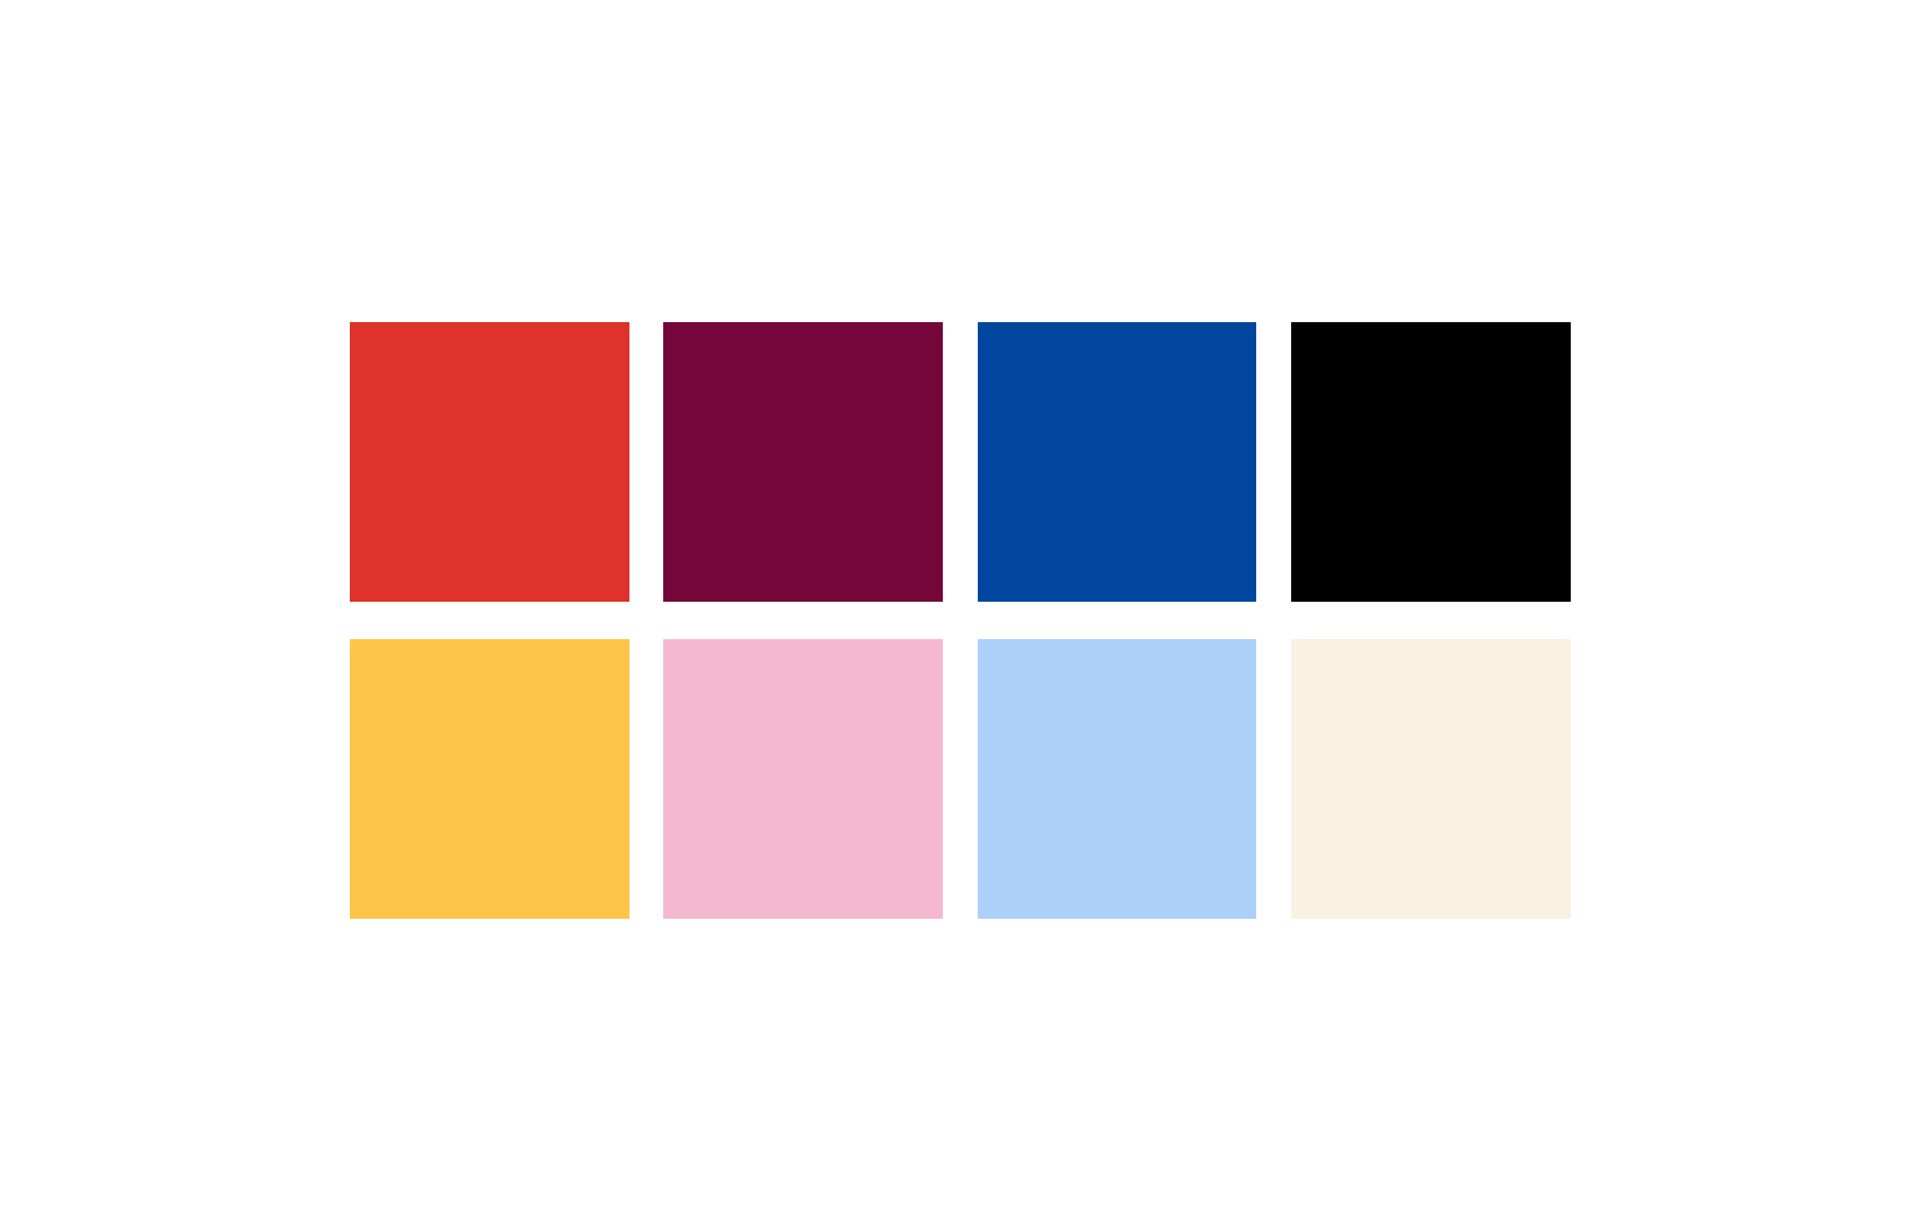 Farbfelder vom Projekt Mate. Rot, Bordeaux Rot, Pazifik Blau, Gelb, Rosa, Hellblau, Schwarz und Ecru